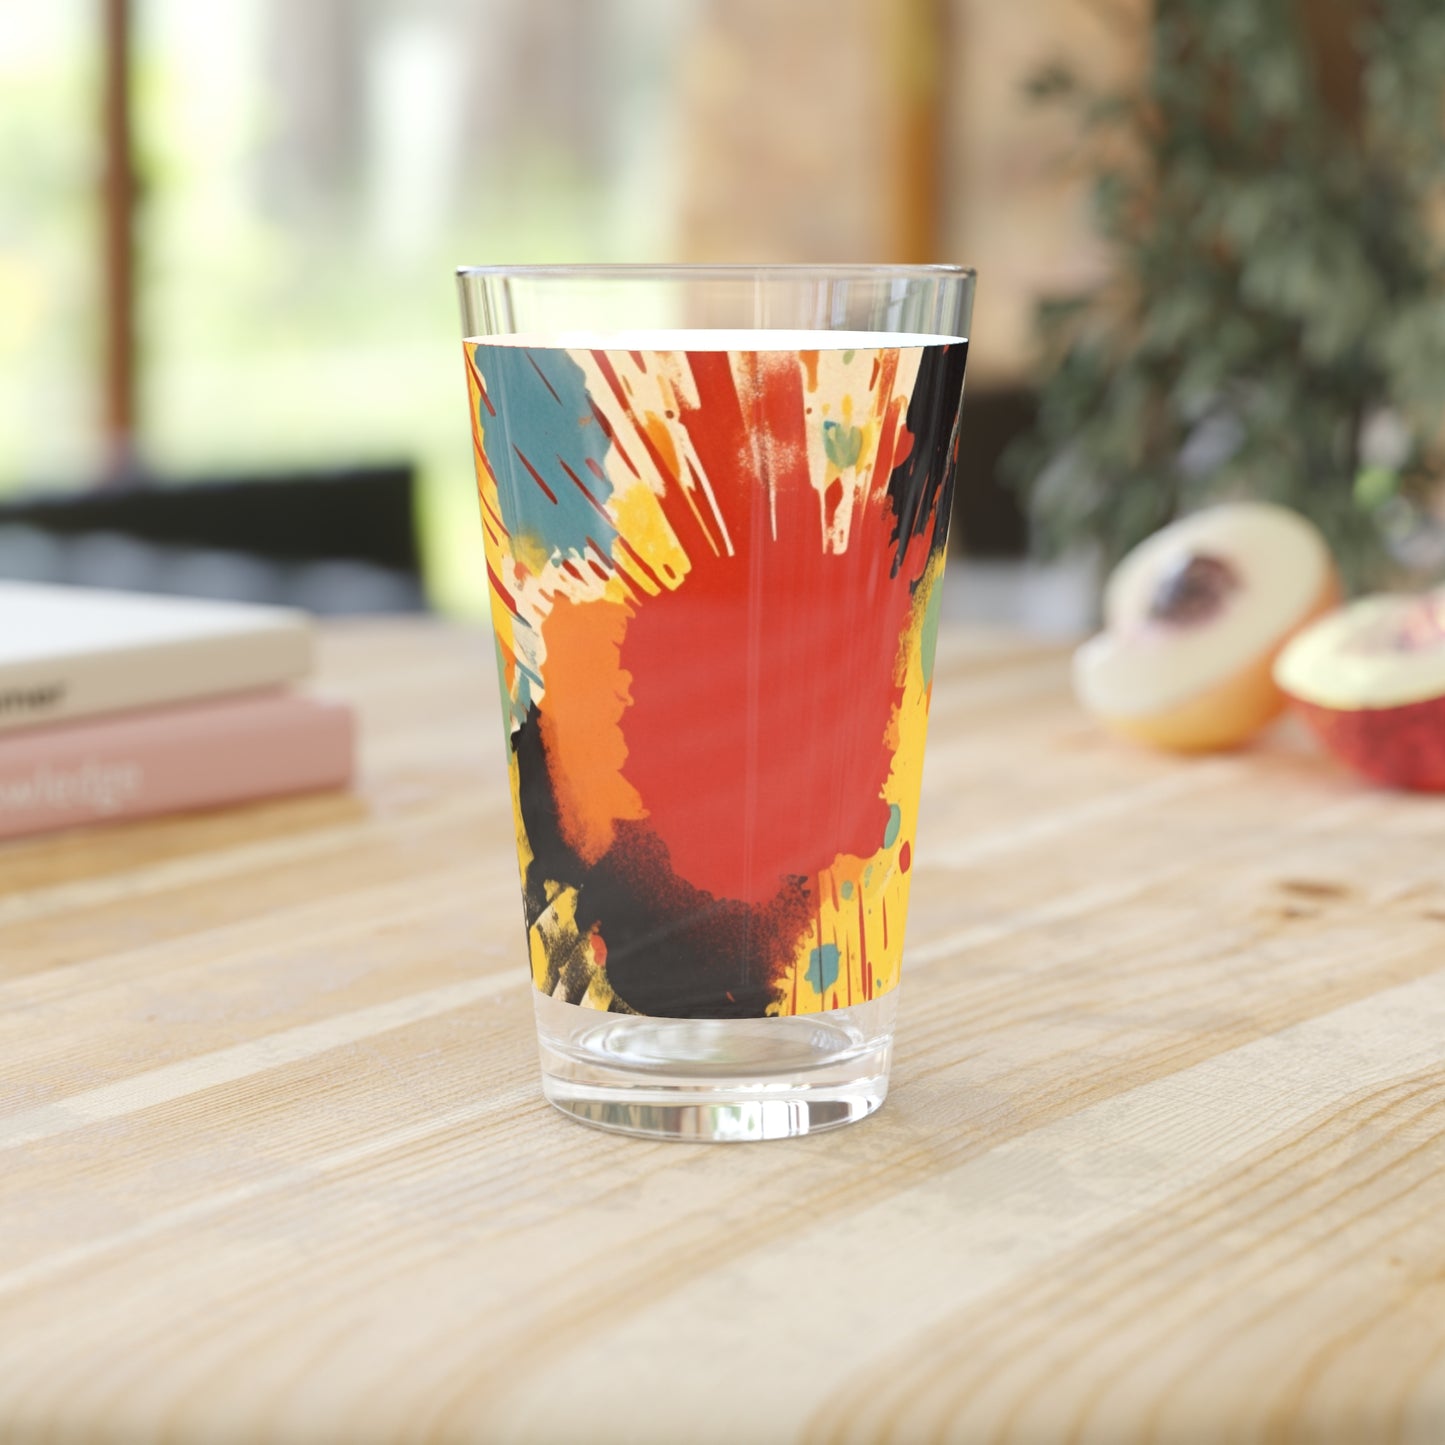 Serenading Silkscreen: Abstract Patchwork Pint Glass